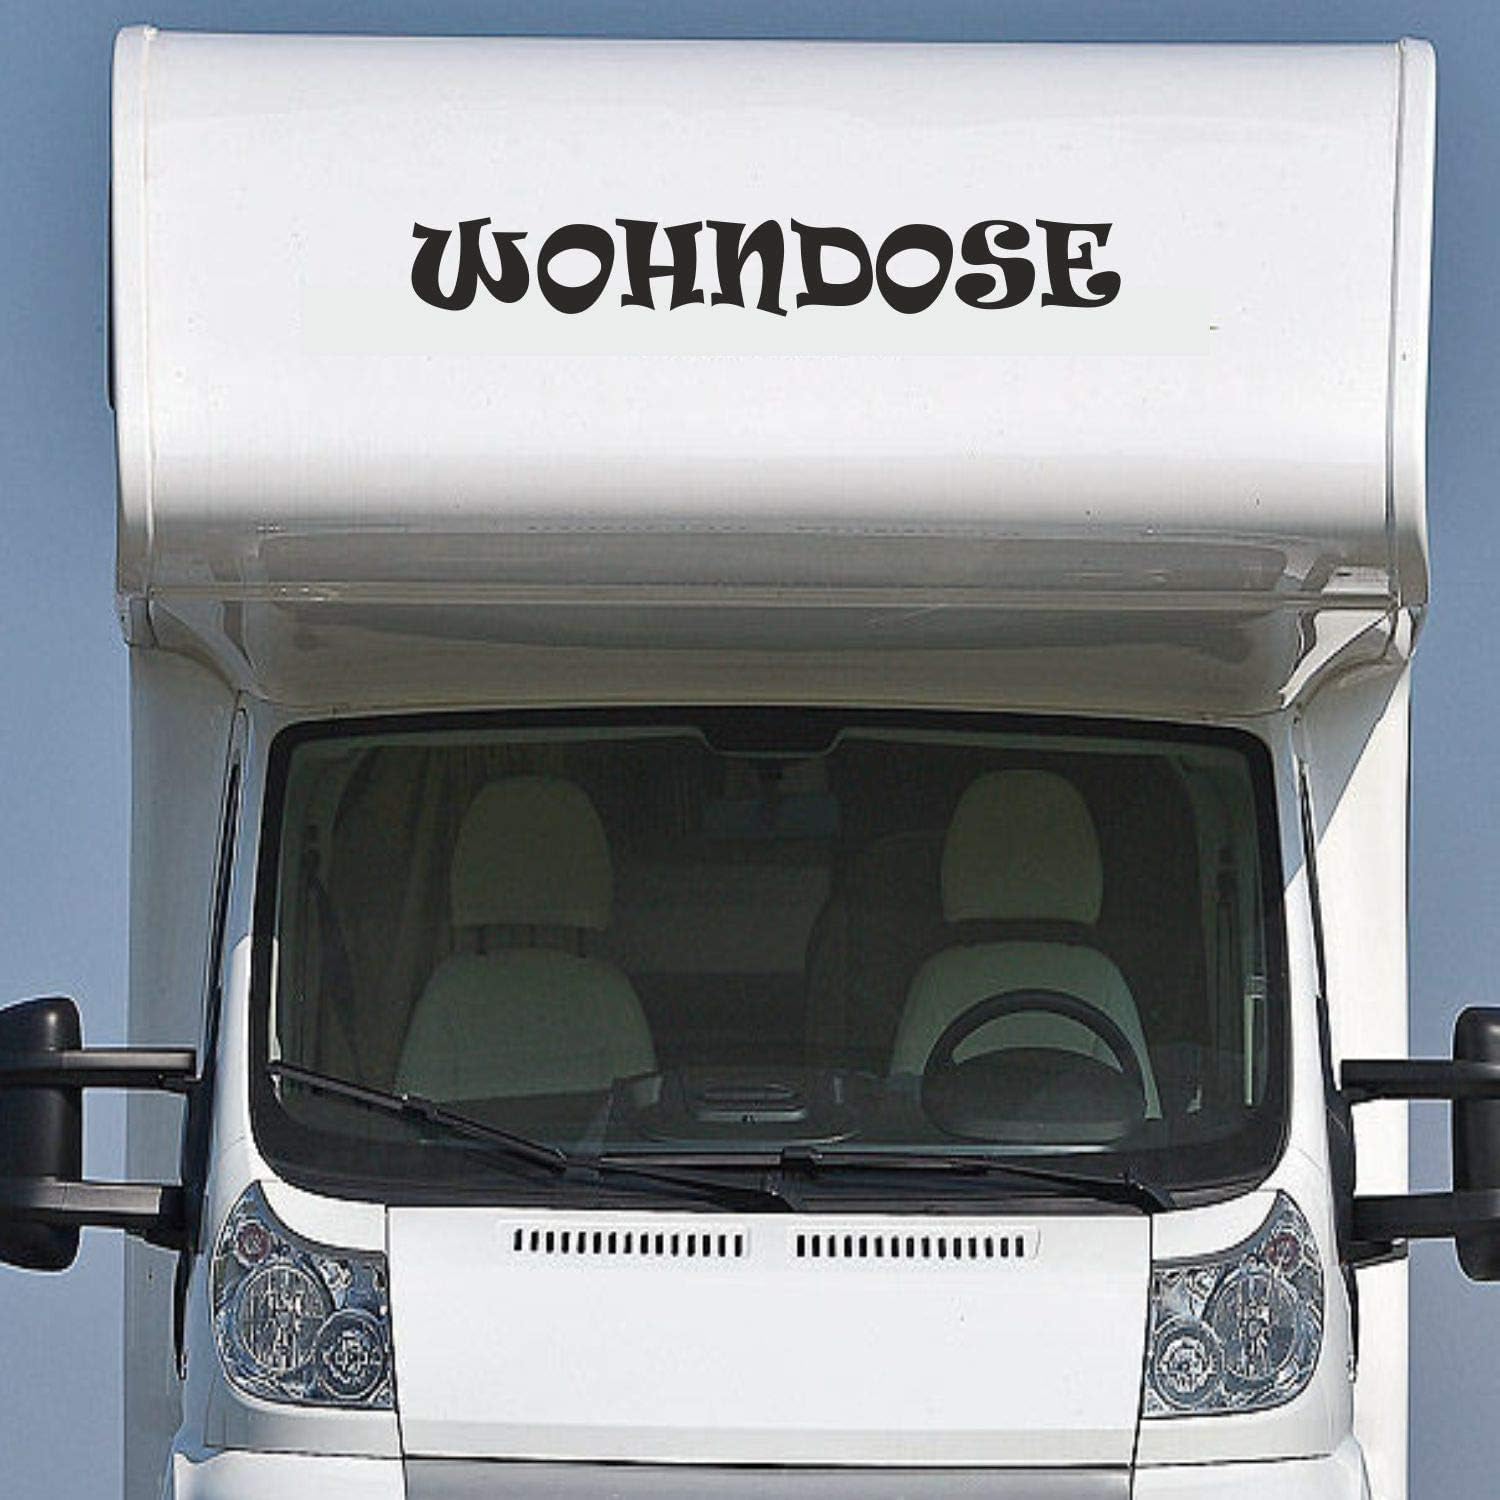 Rakelfix Wohnmobil Wohnwagen Aufkleber Lustiger Schriftzug Wohndose ca 130cm Sticker Camping Urlaub Womi Wowa von Rakelfix